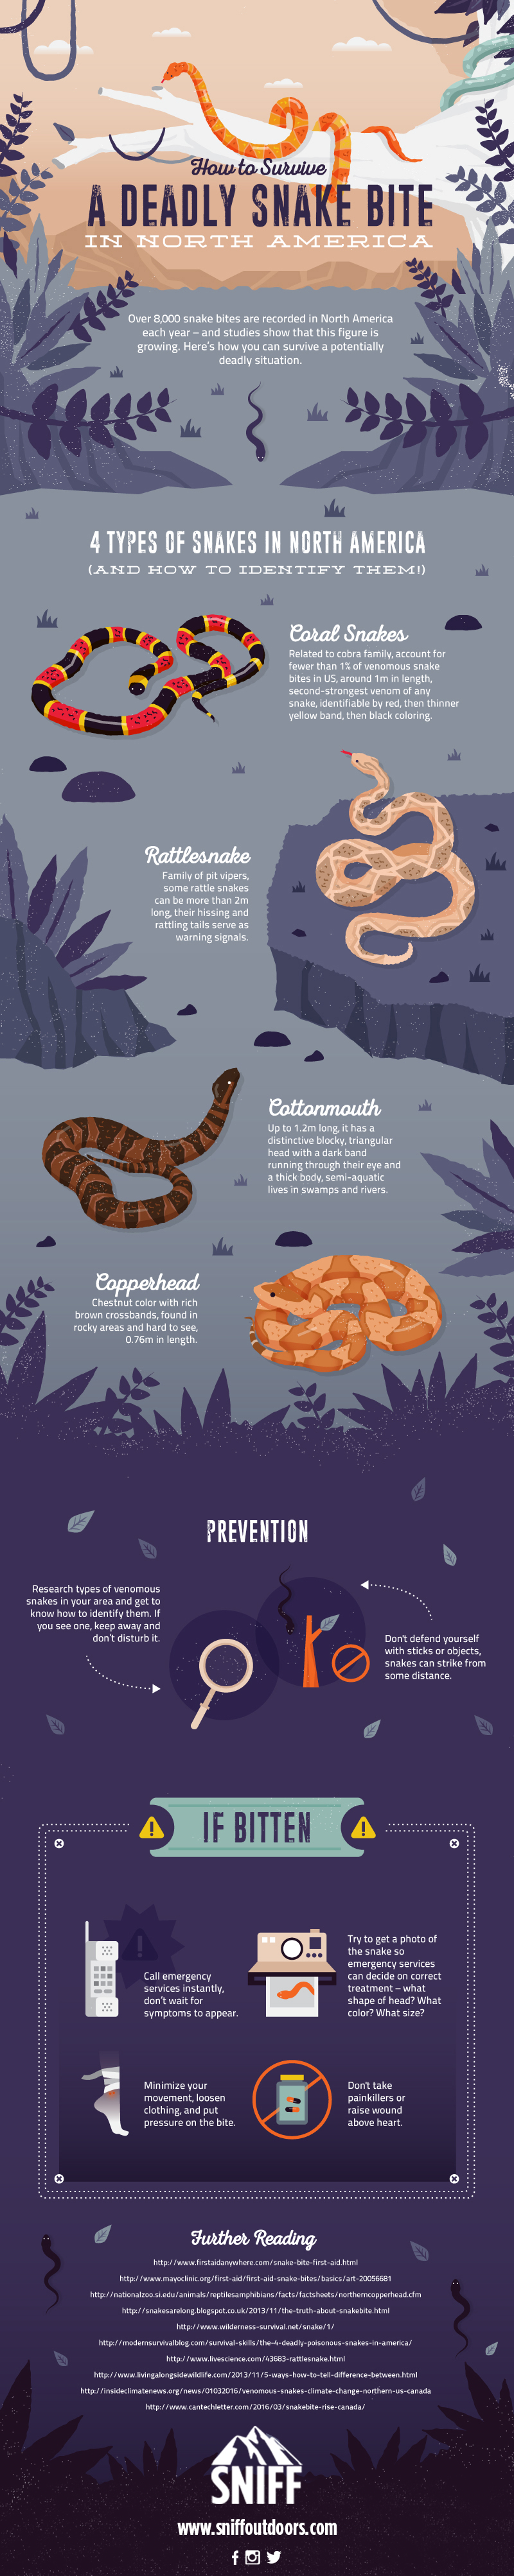 deadly snake guide